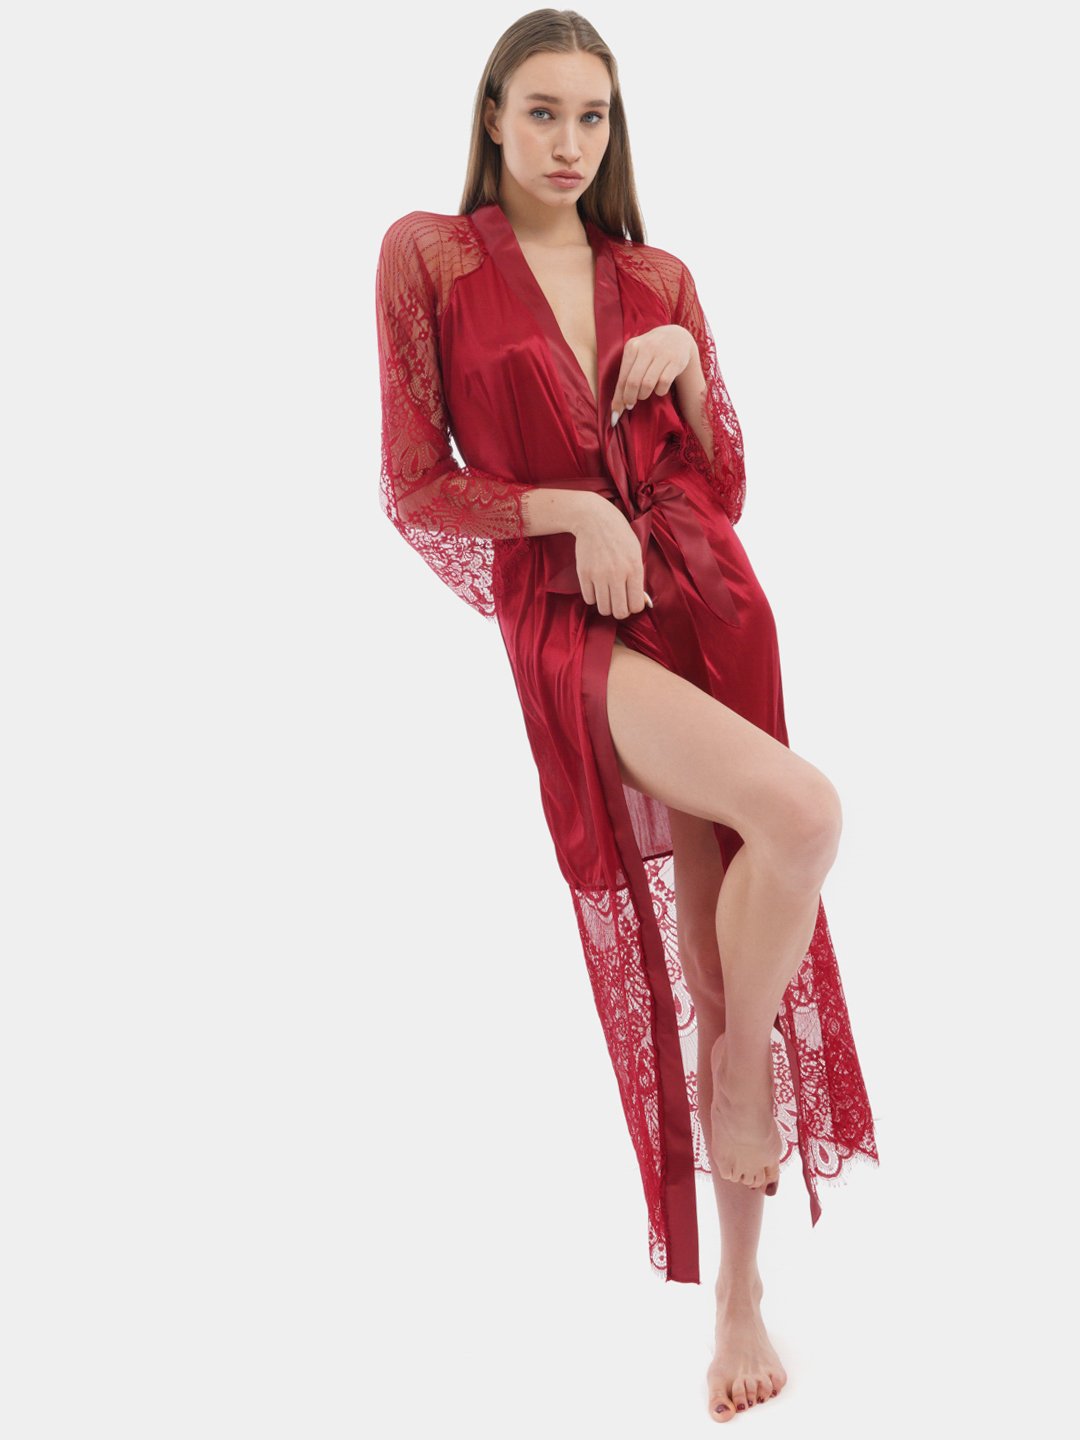 Сексуальный женский халат Obsessive Sensuelia robe (Обсессив Польша)